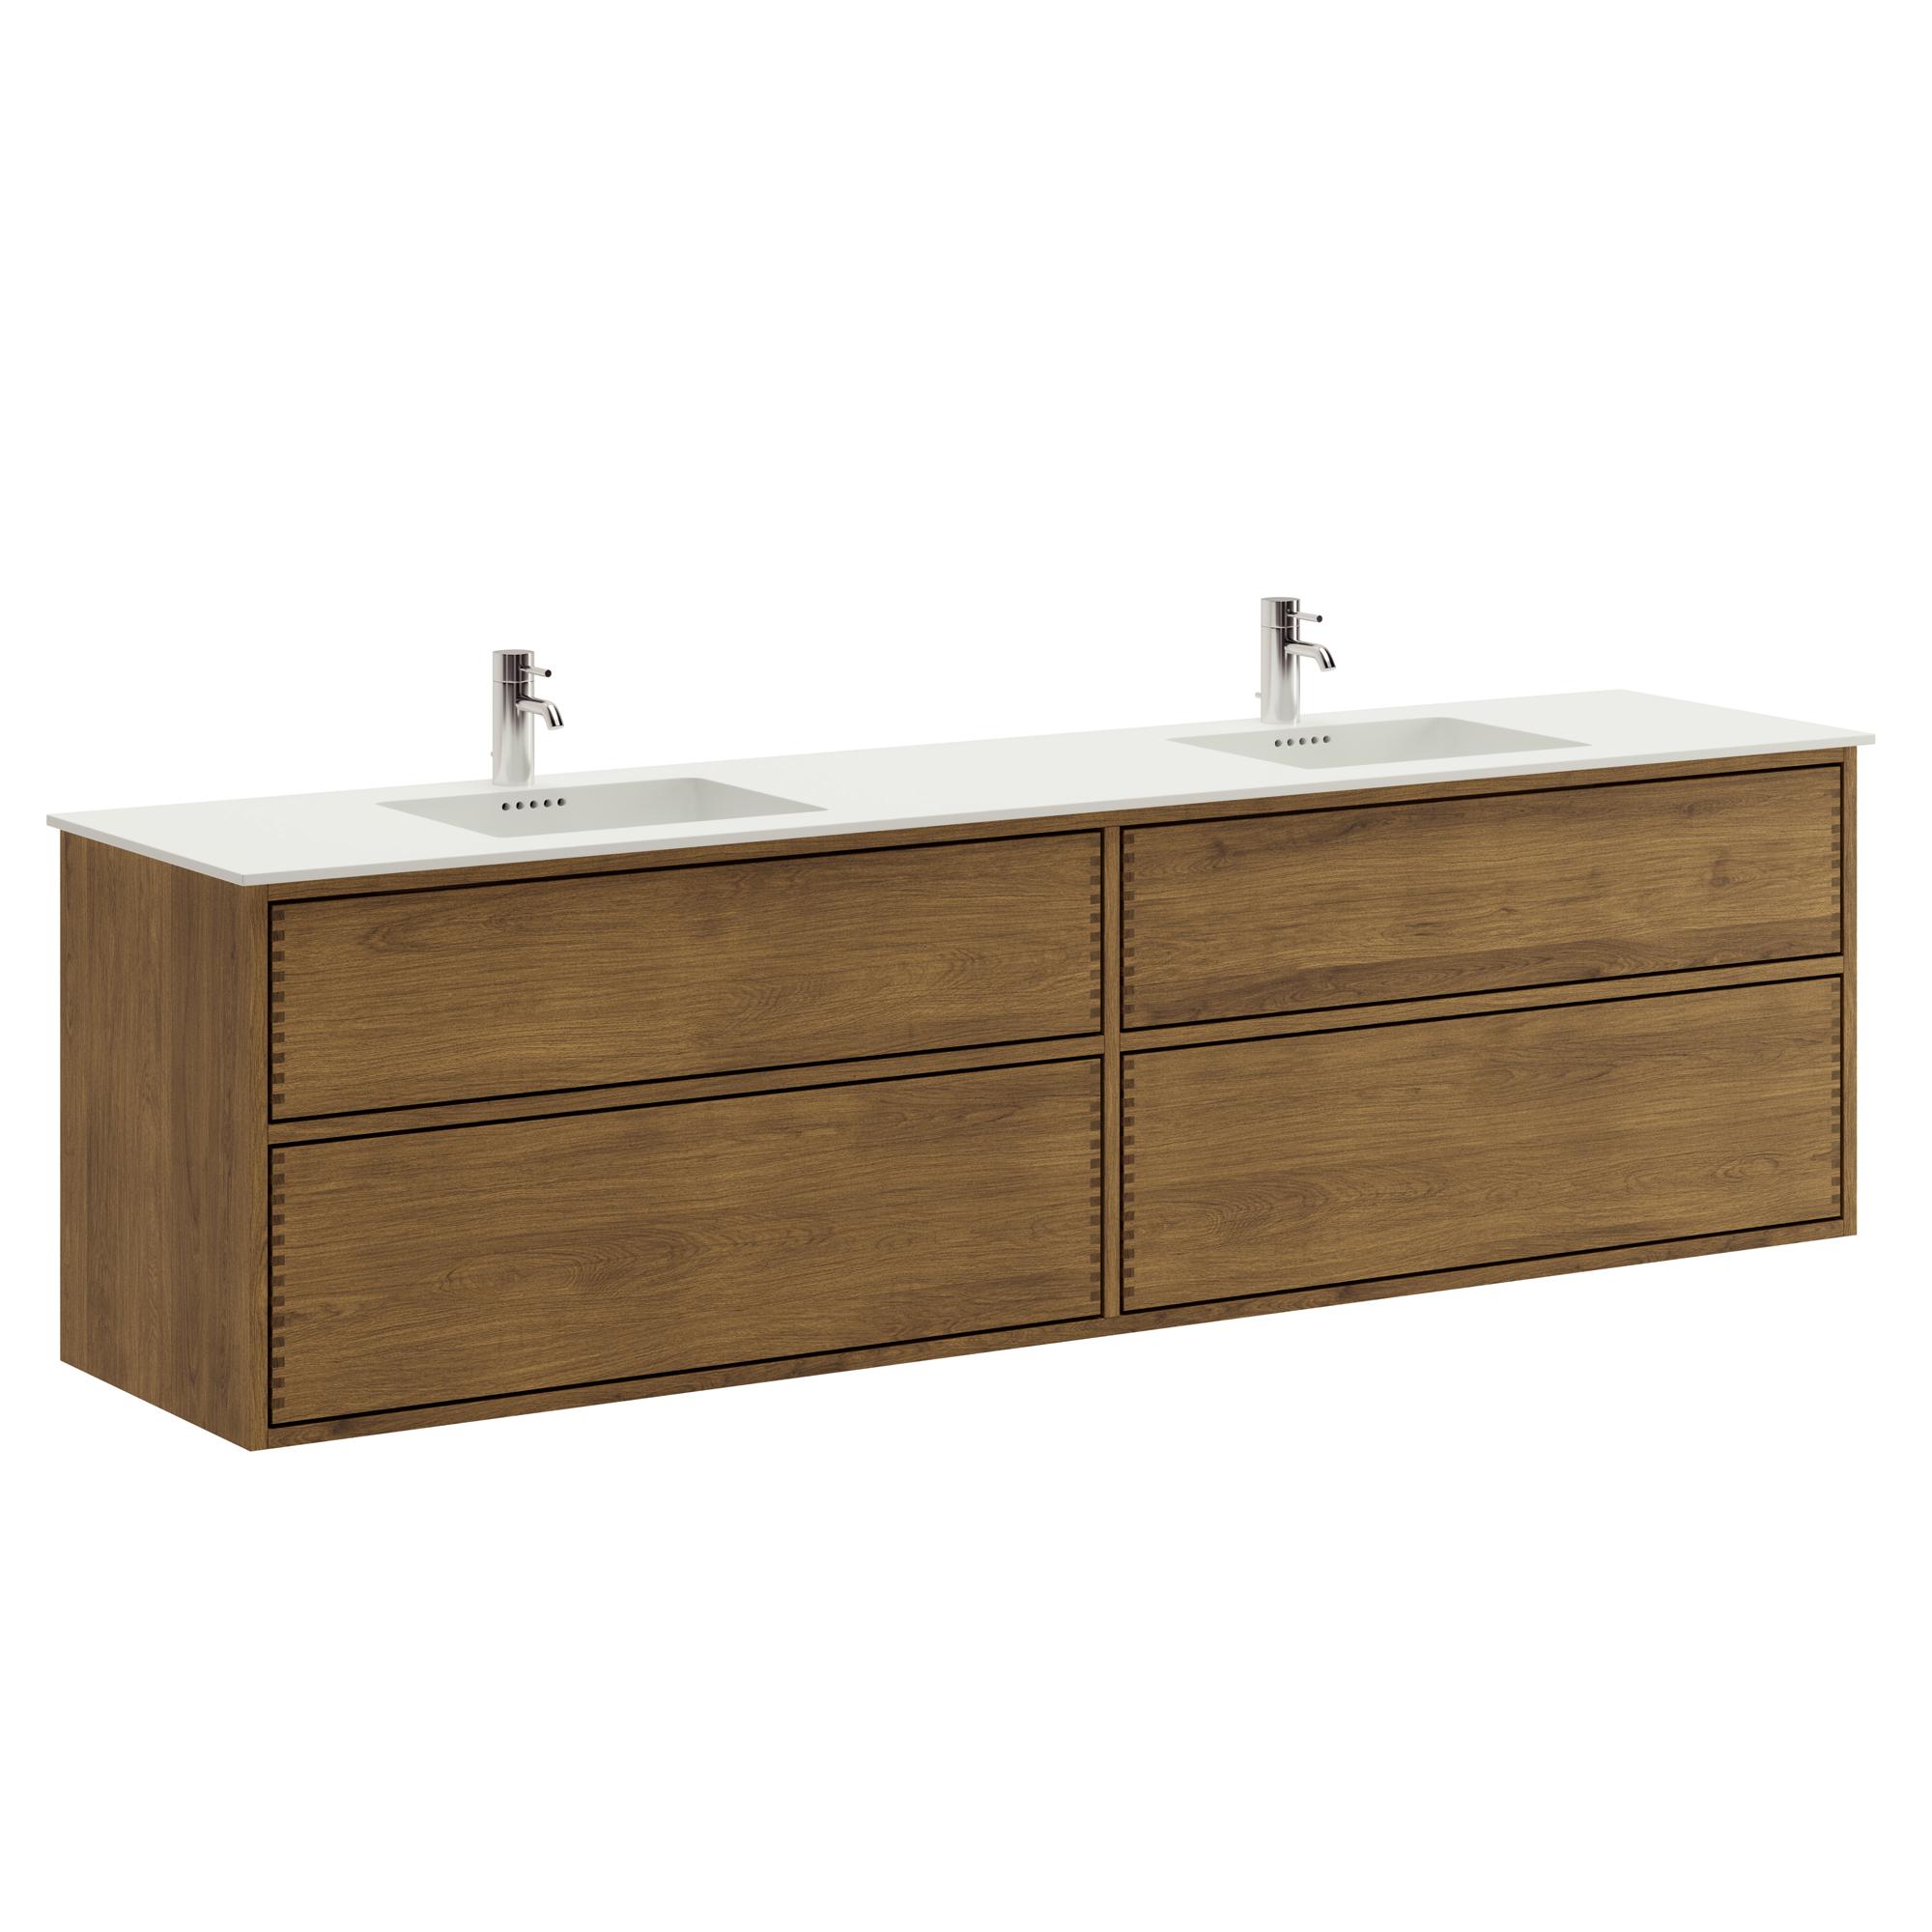 200 cm dunkel-geölter Just Wood Push Badezimmermöbel mit 4 Schubladen und Solid Surface-Waschbecken - Doppelwaschbecken